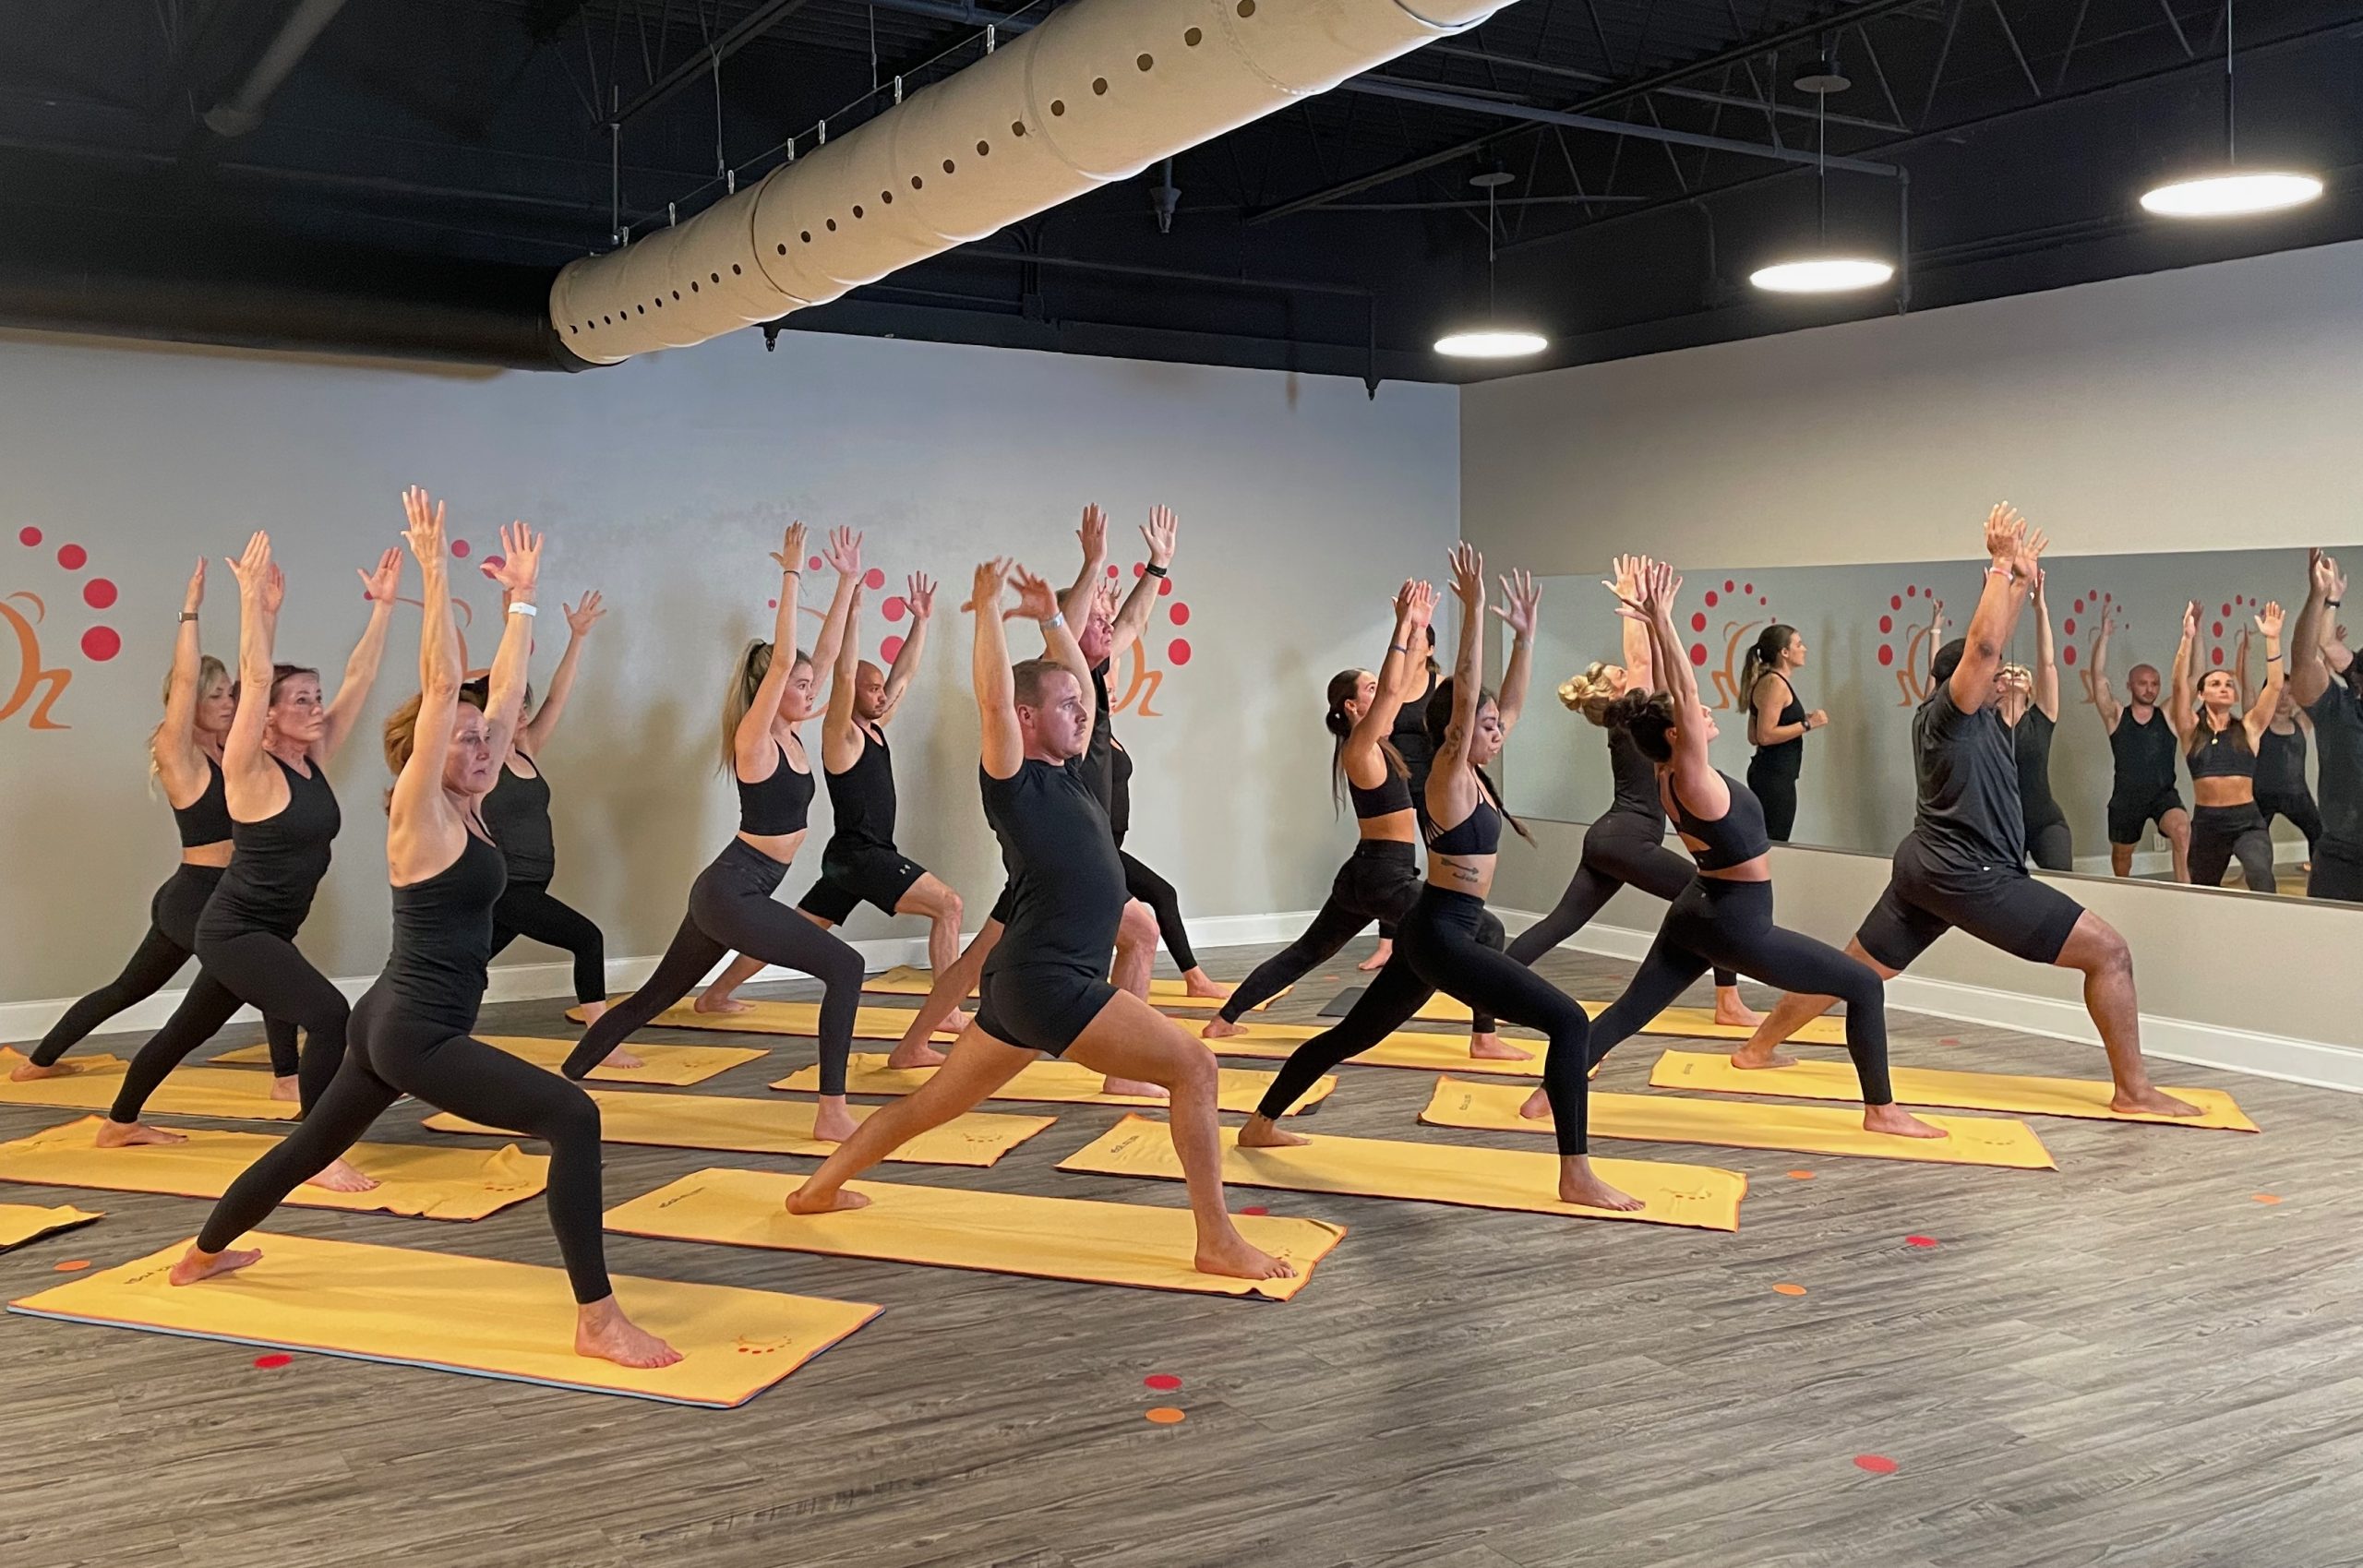 State-of-the-Art Yoga Studio Opens in Suwanee - Suwanee Magazine